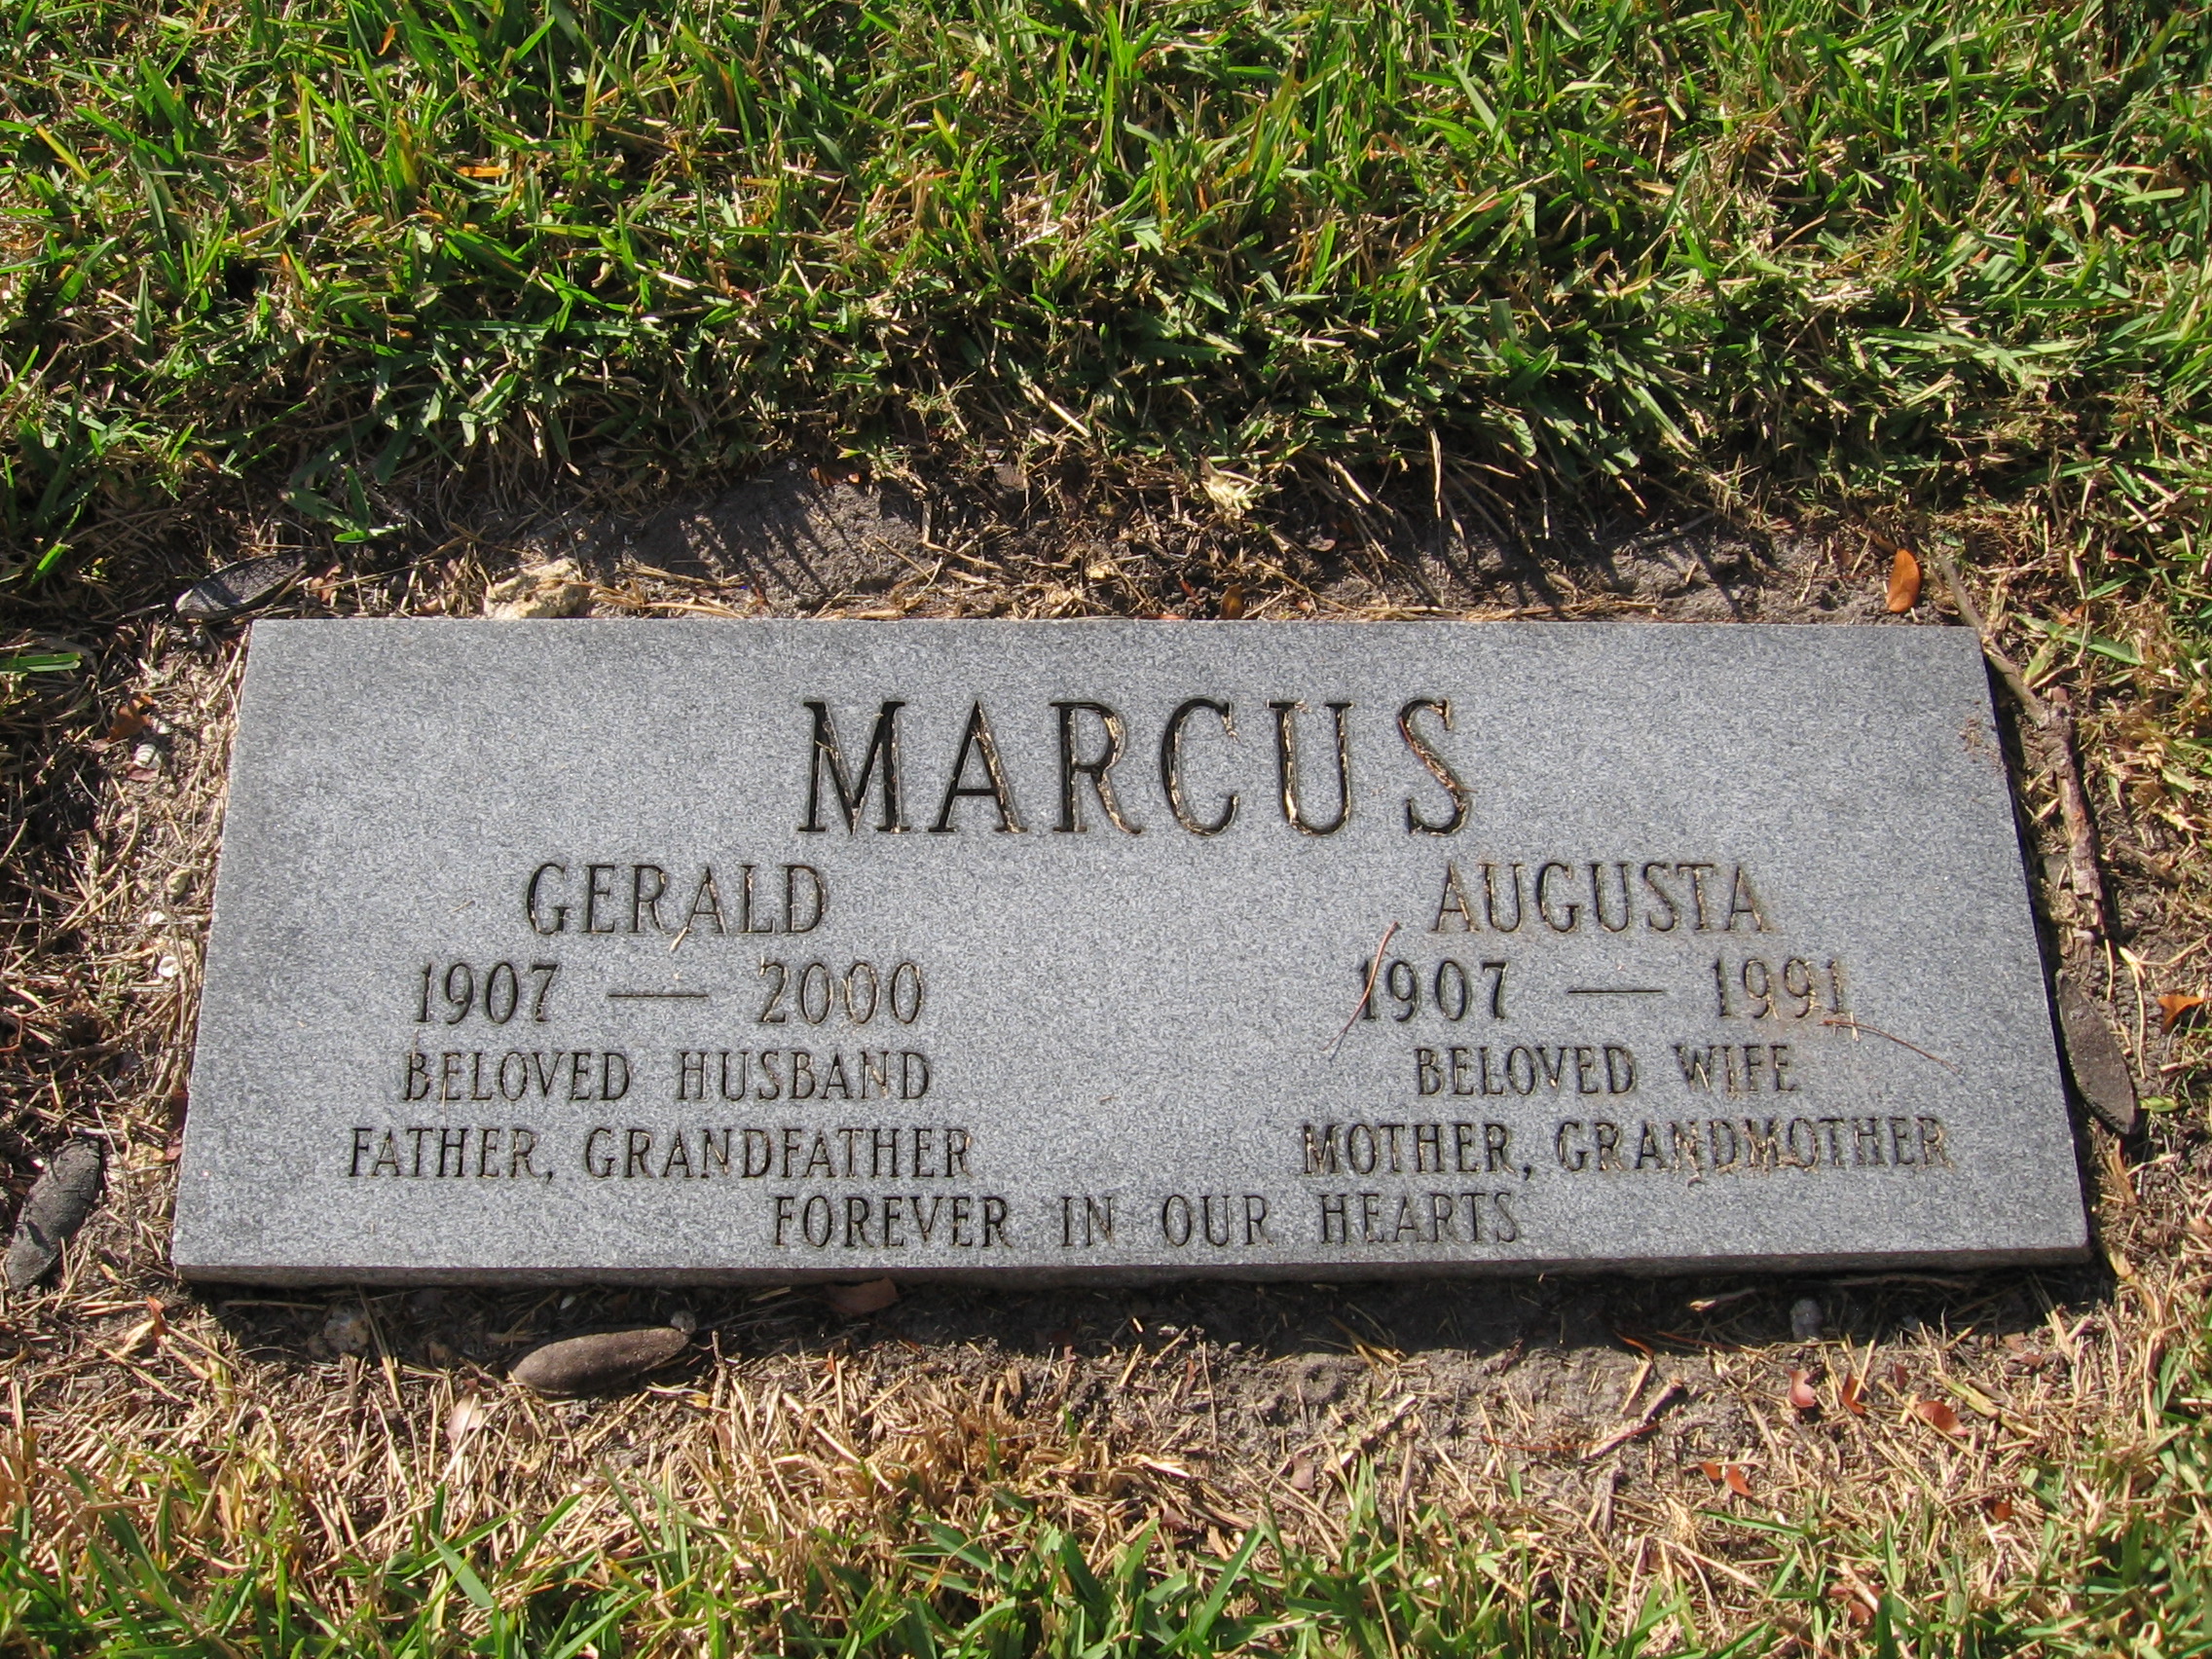 Gerald Marcus